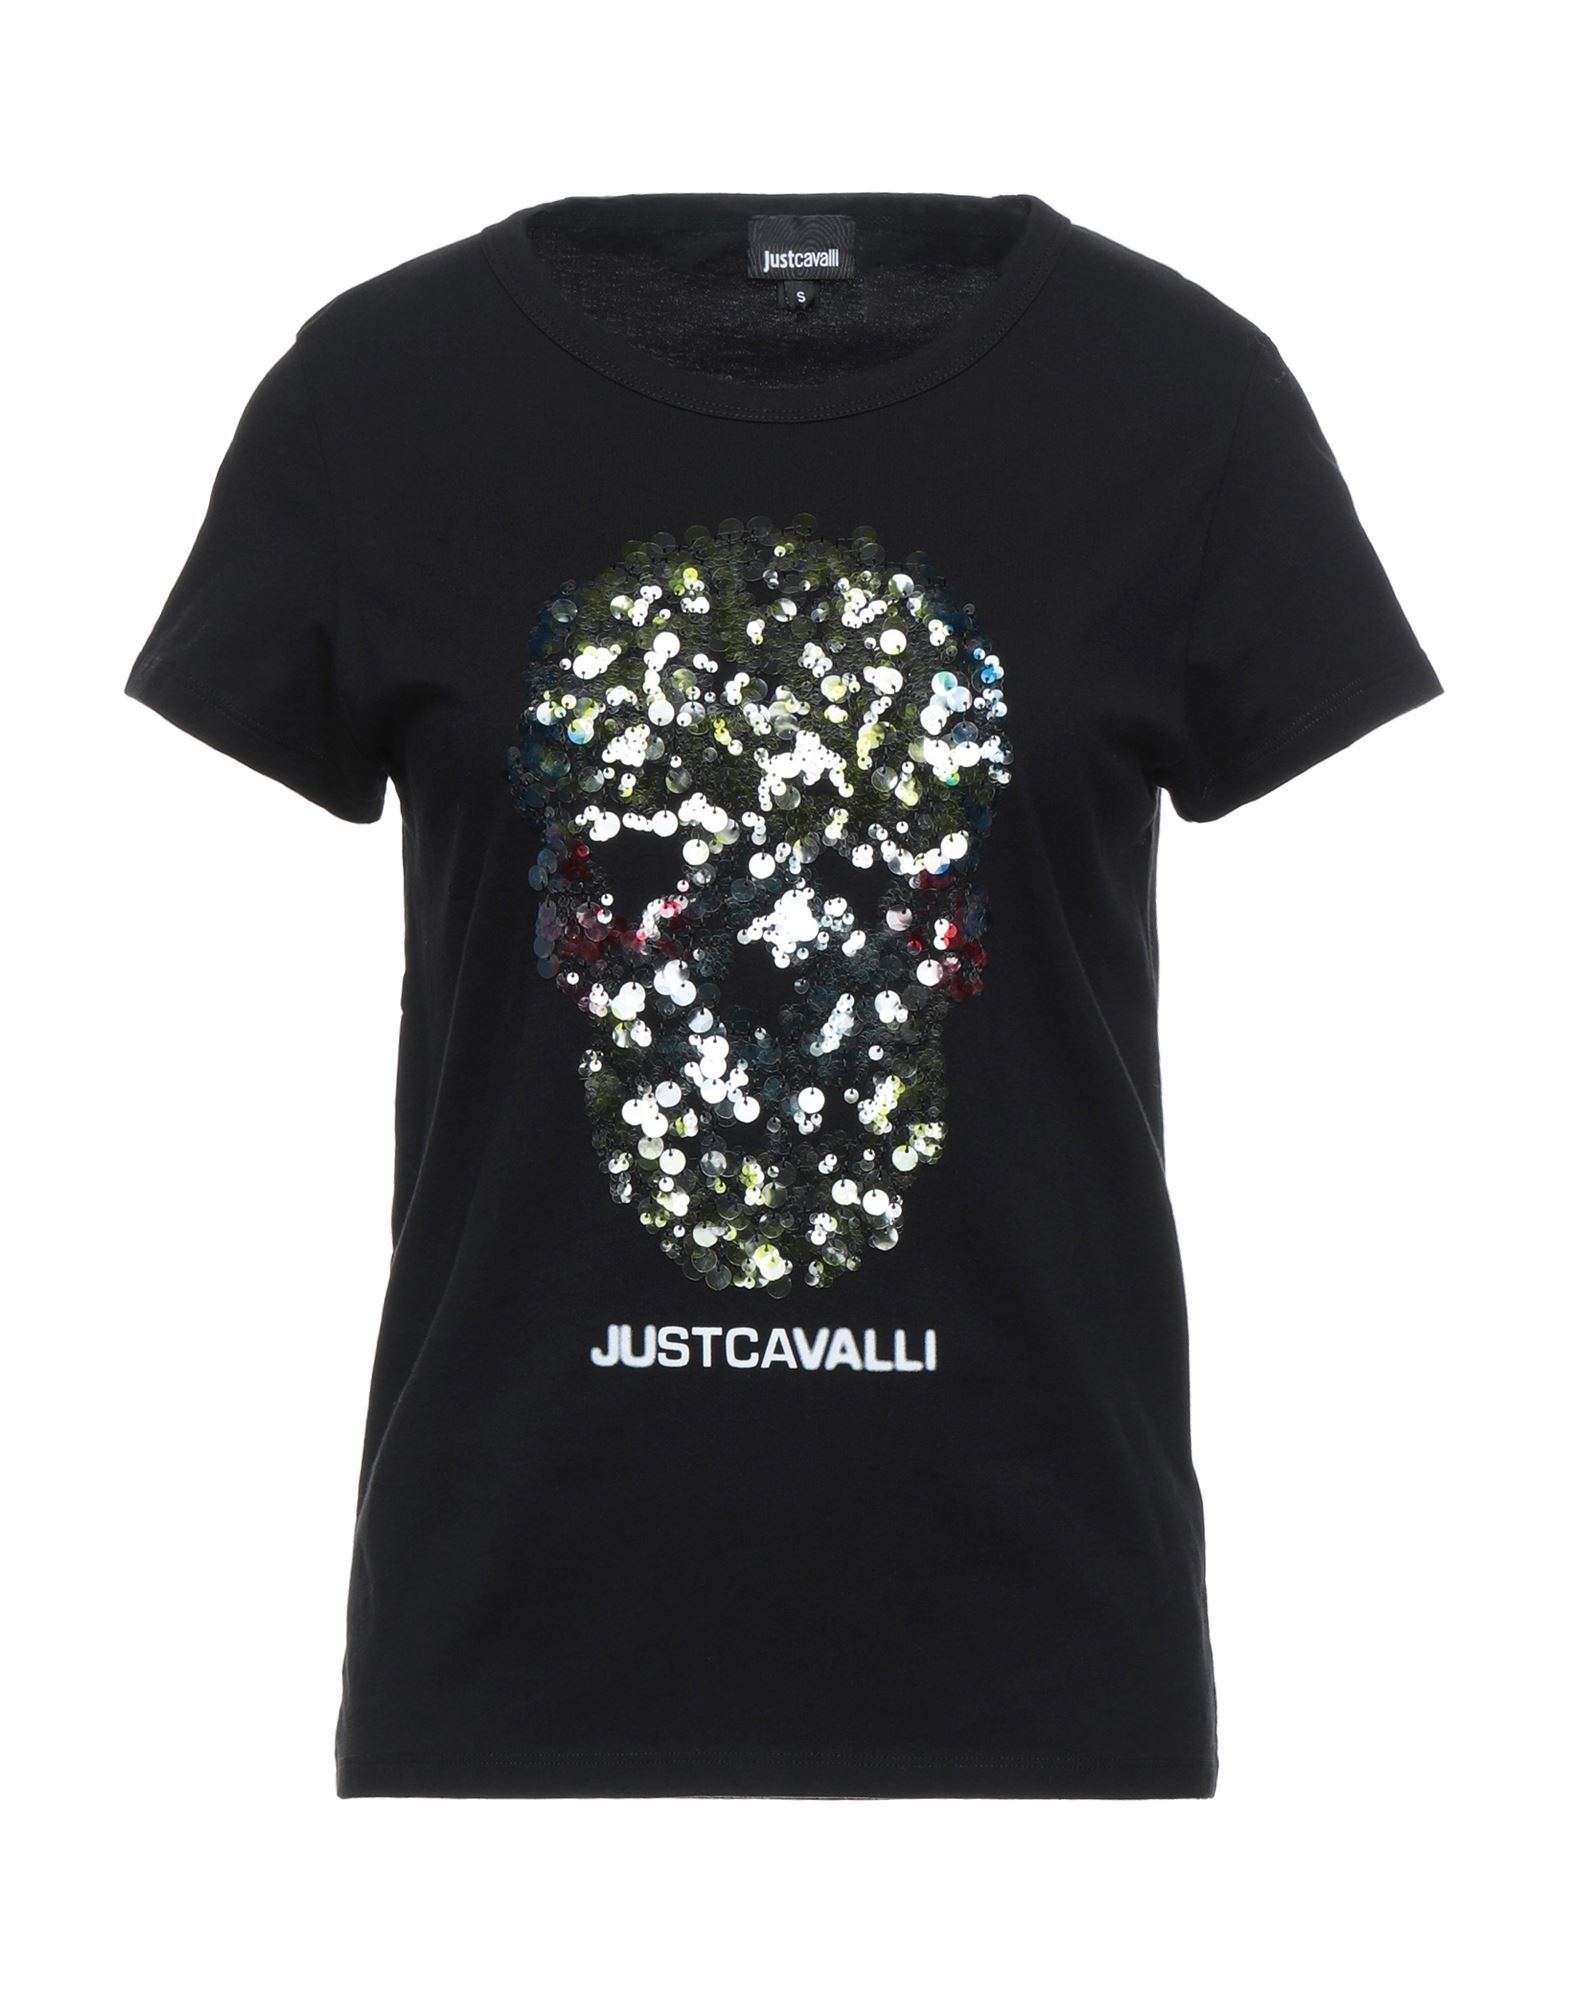 Just Cavalli T-shirts In Black